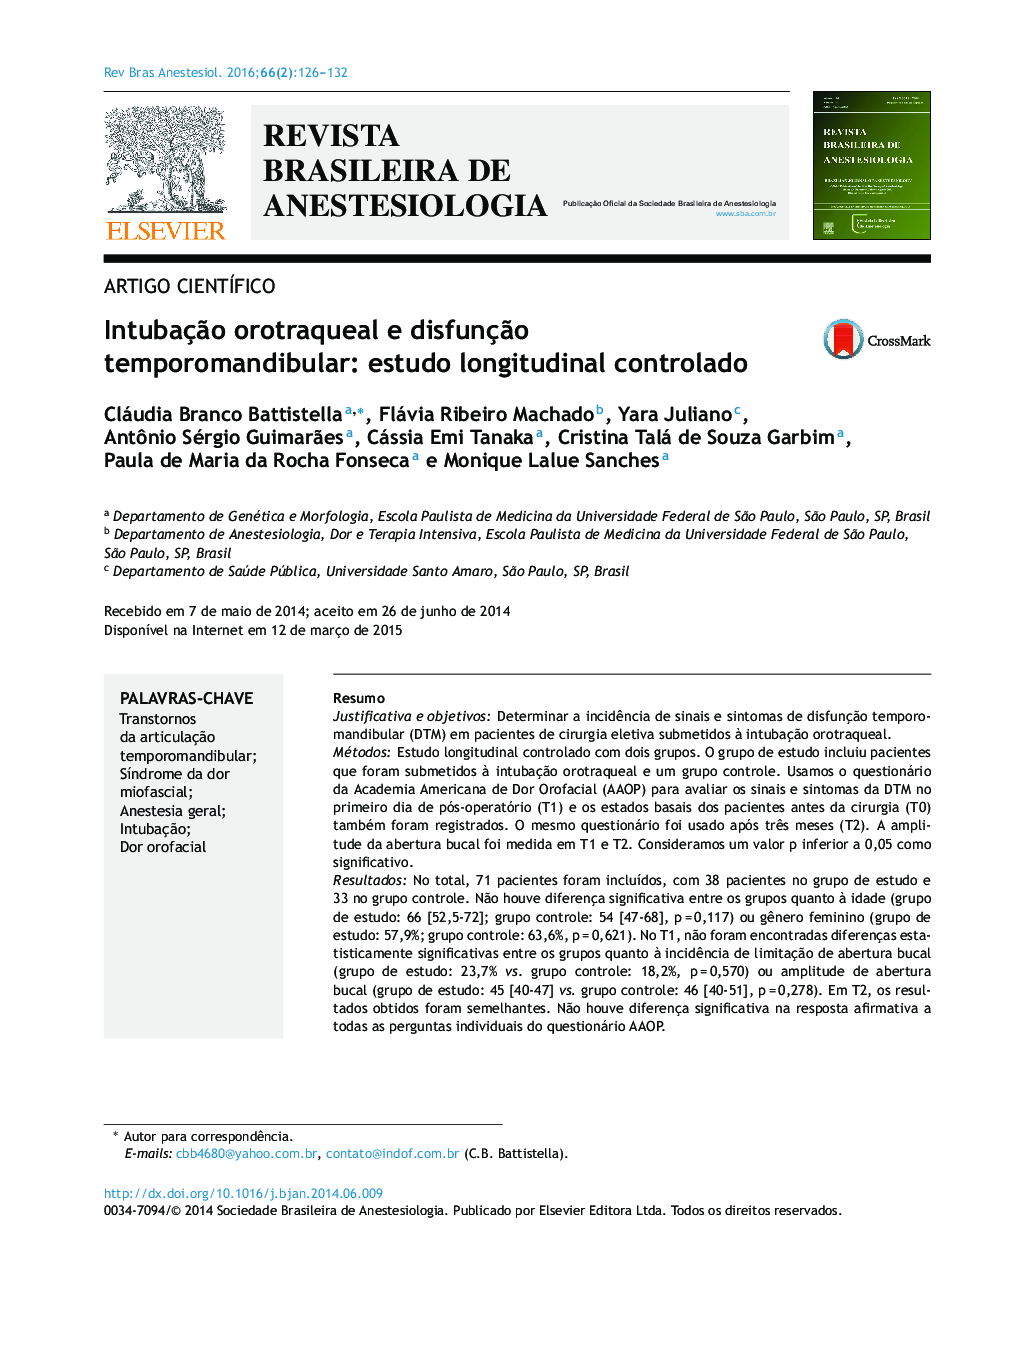 Intubação orotraqueal e disfunção temporomandibular: estudo longitudinal controlado